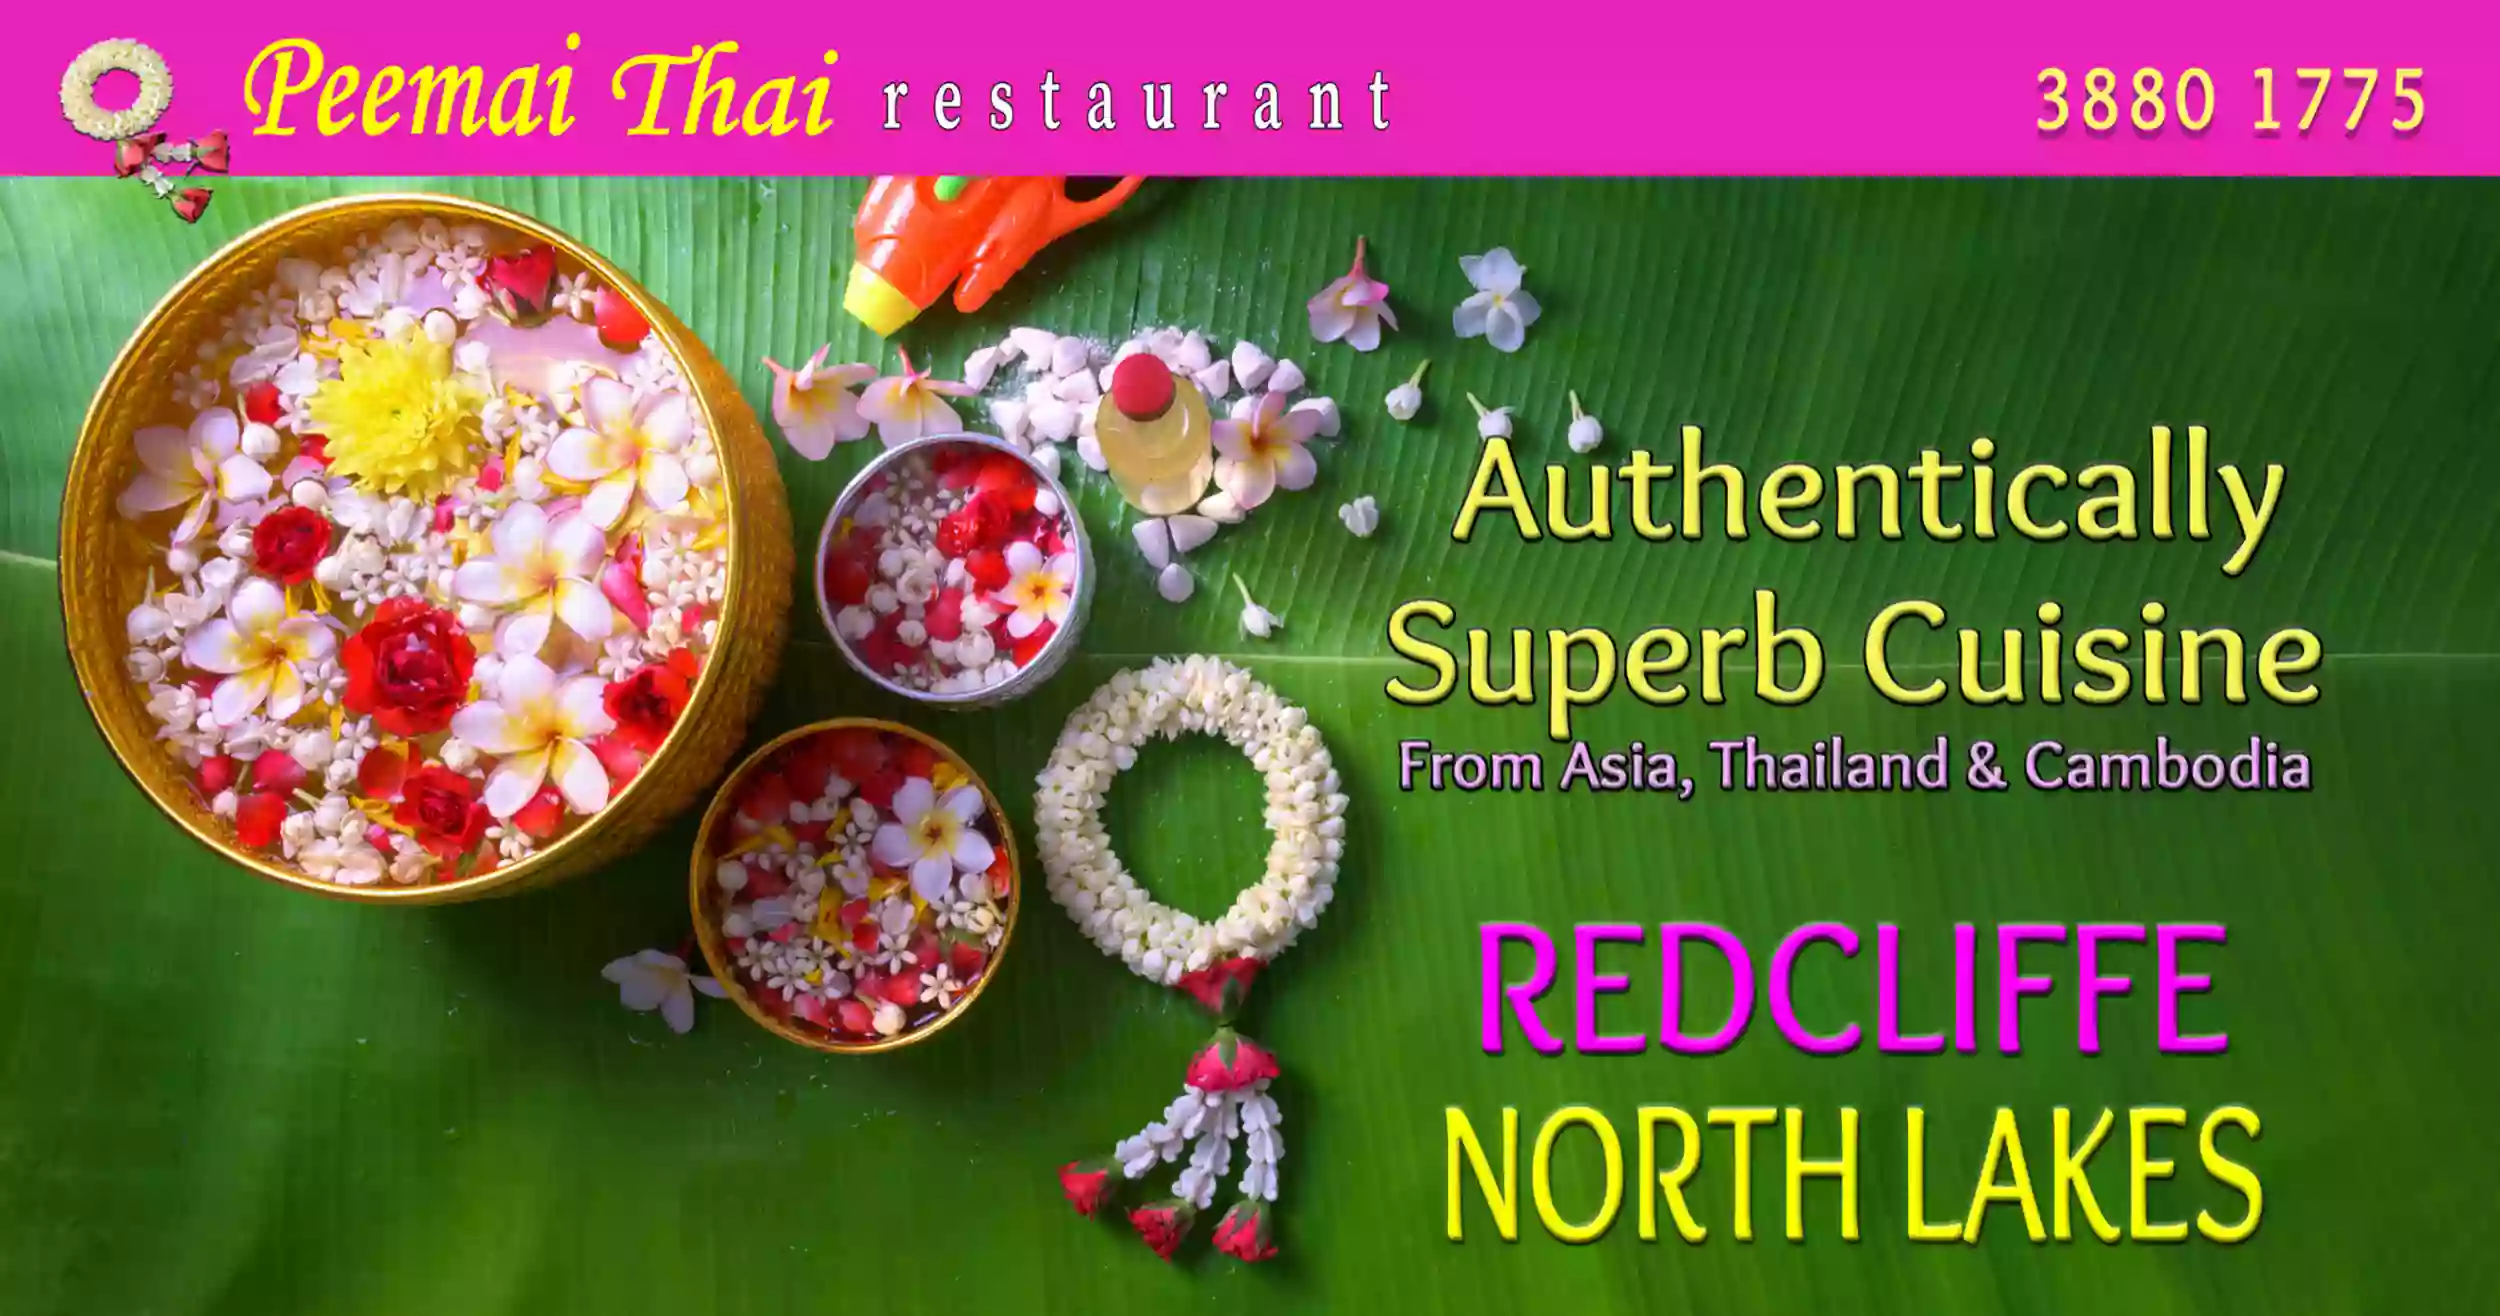 Peemai Thai Restaurant / REDCLIFFE